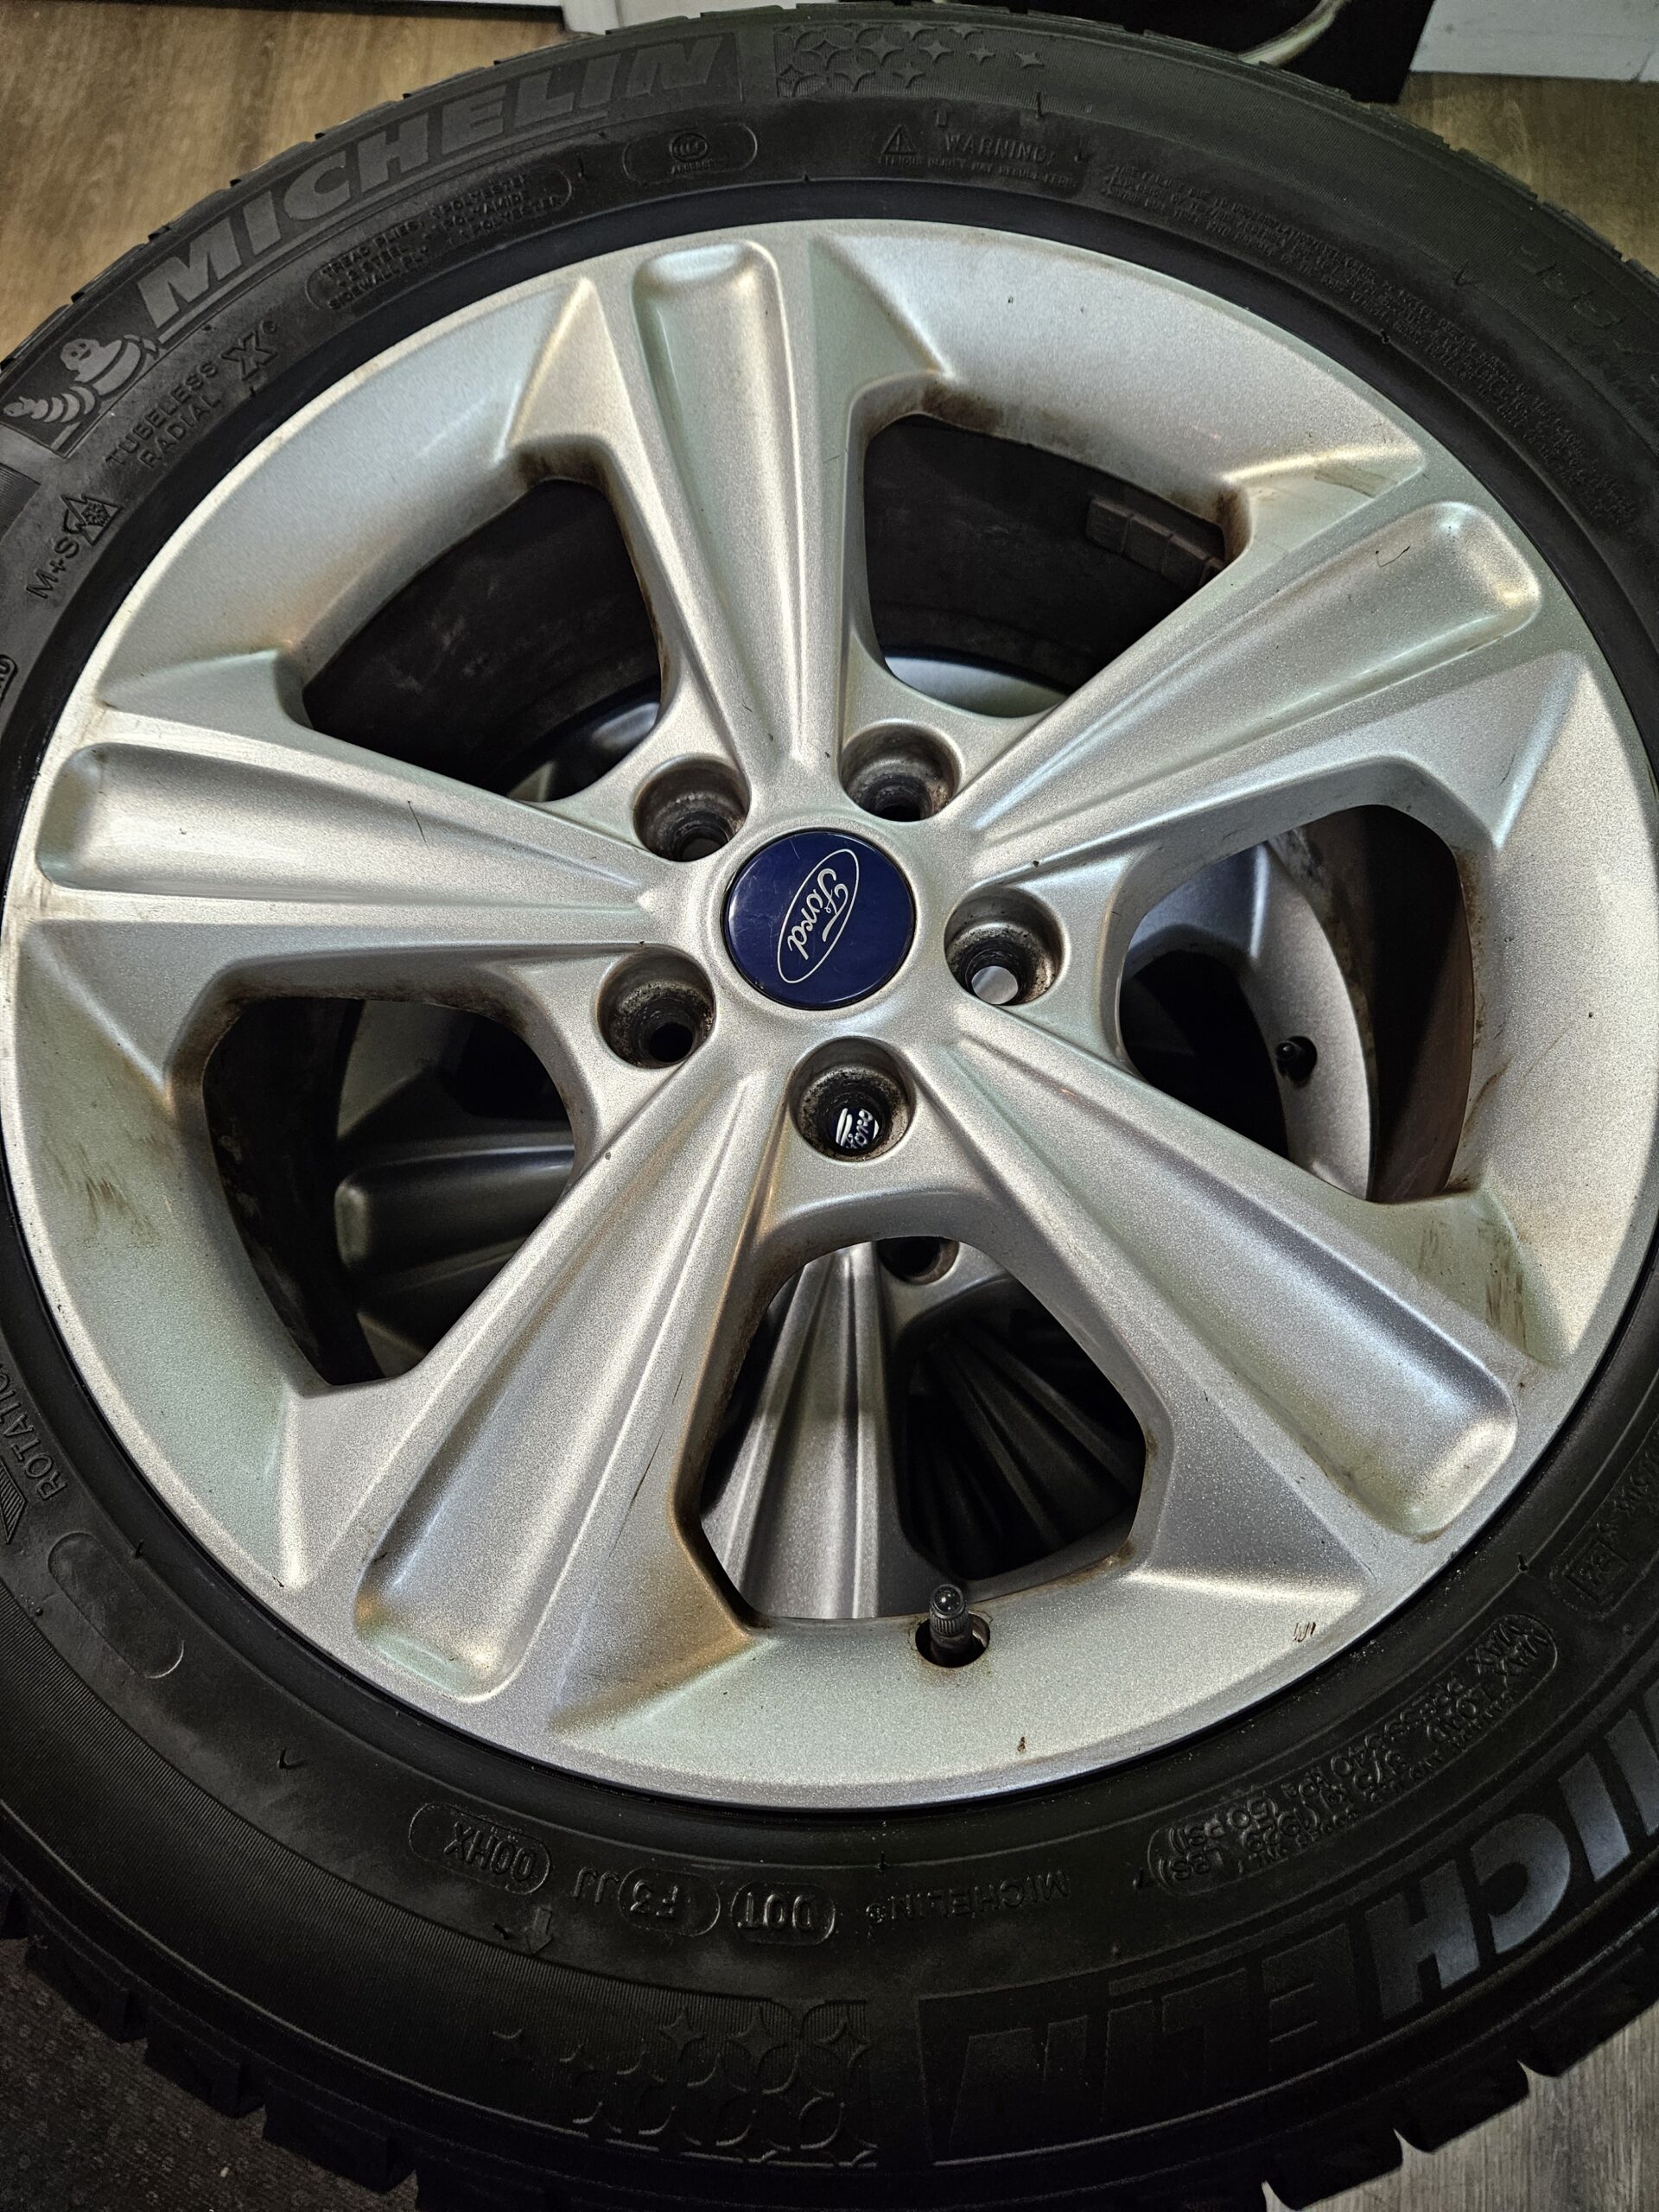 235/55R17 Michelin Snow Tires on Ford Escape Rims